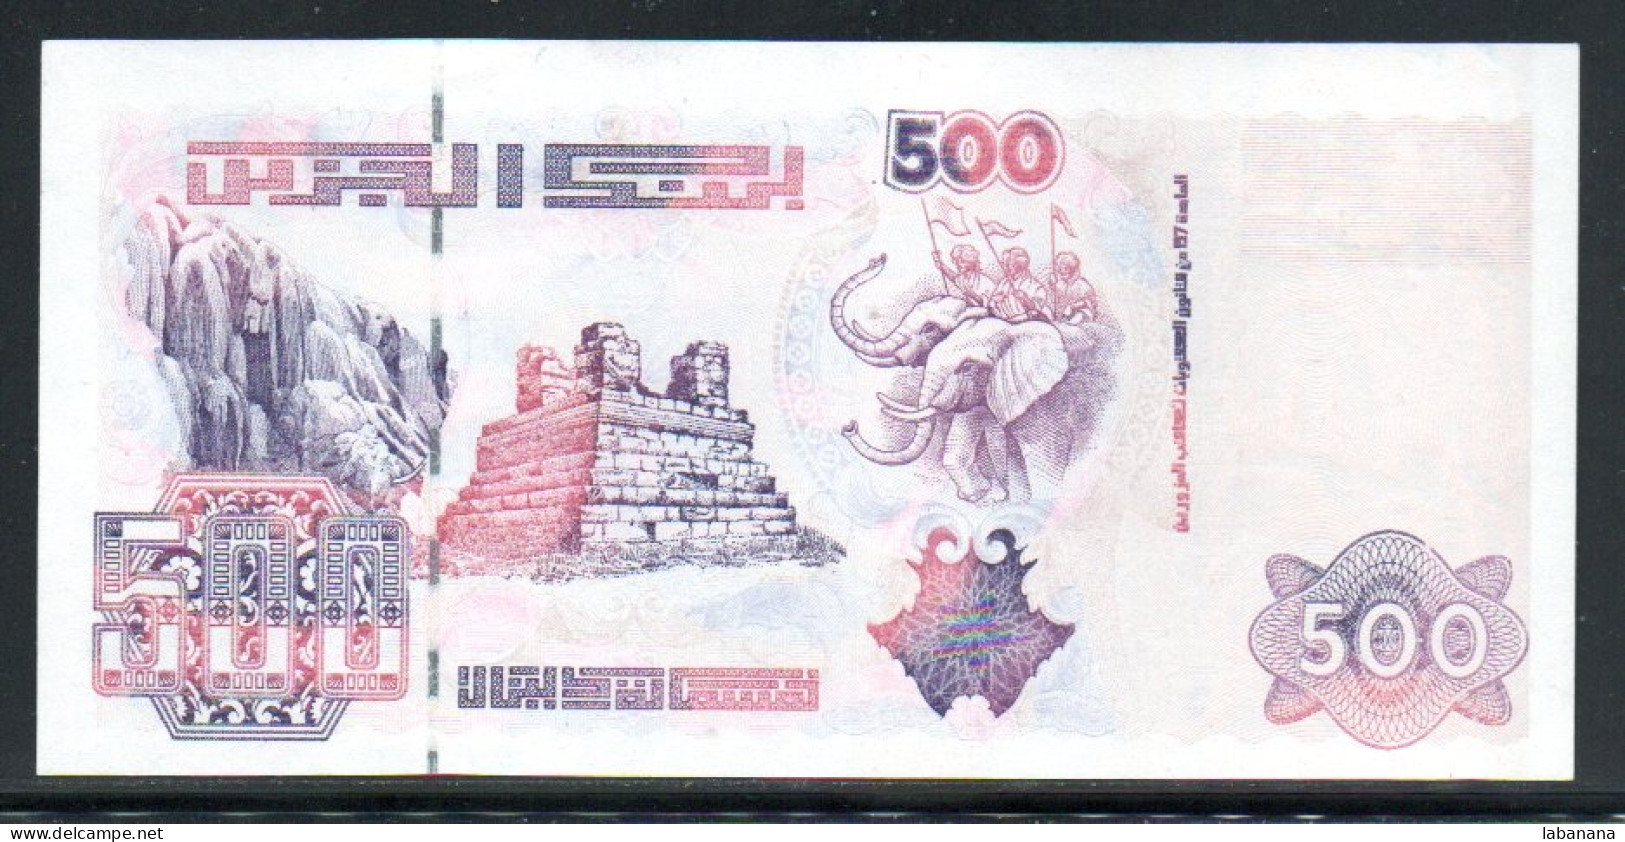 685-Algérie 500 Dinars 1998 02-132 Neuf/unc - Algerien